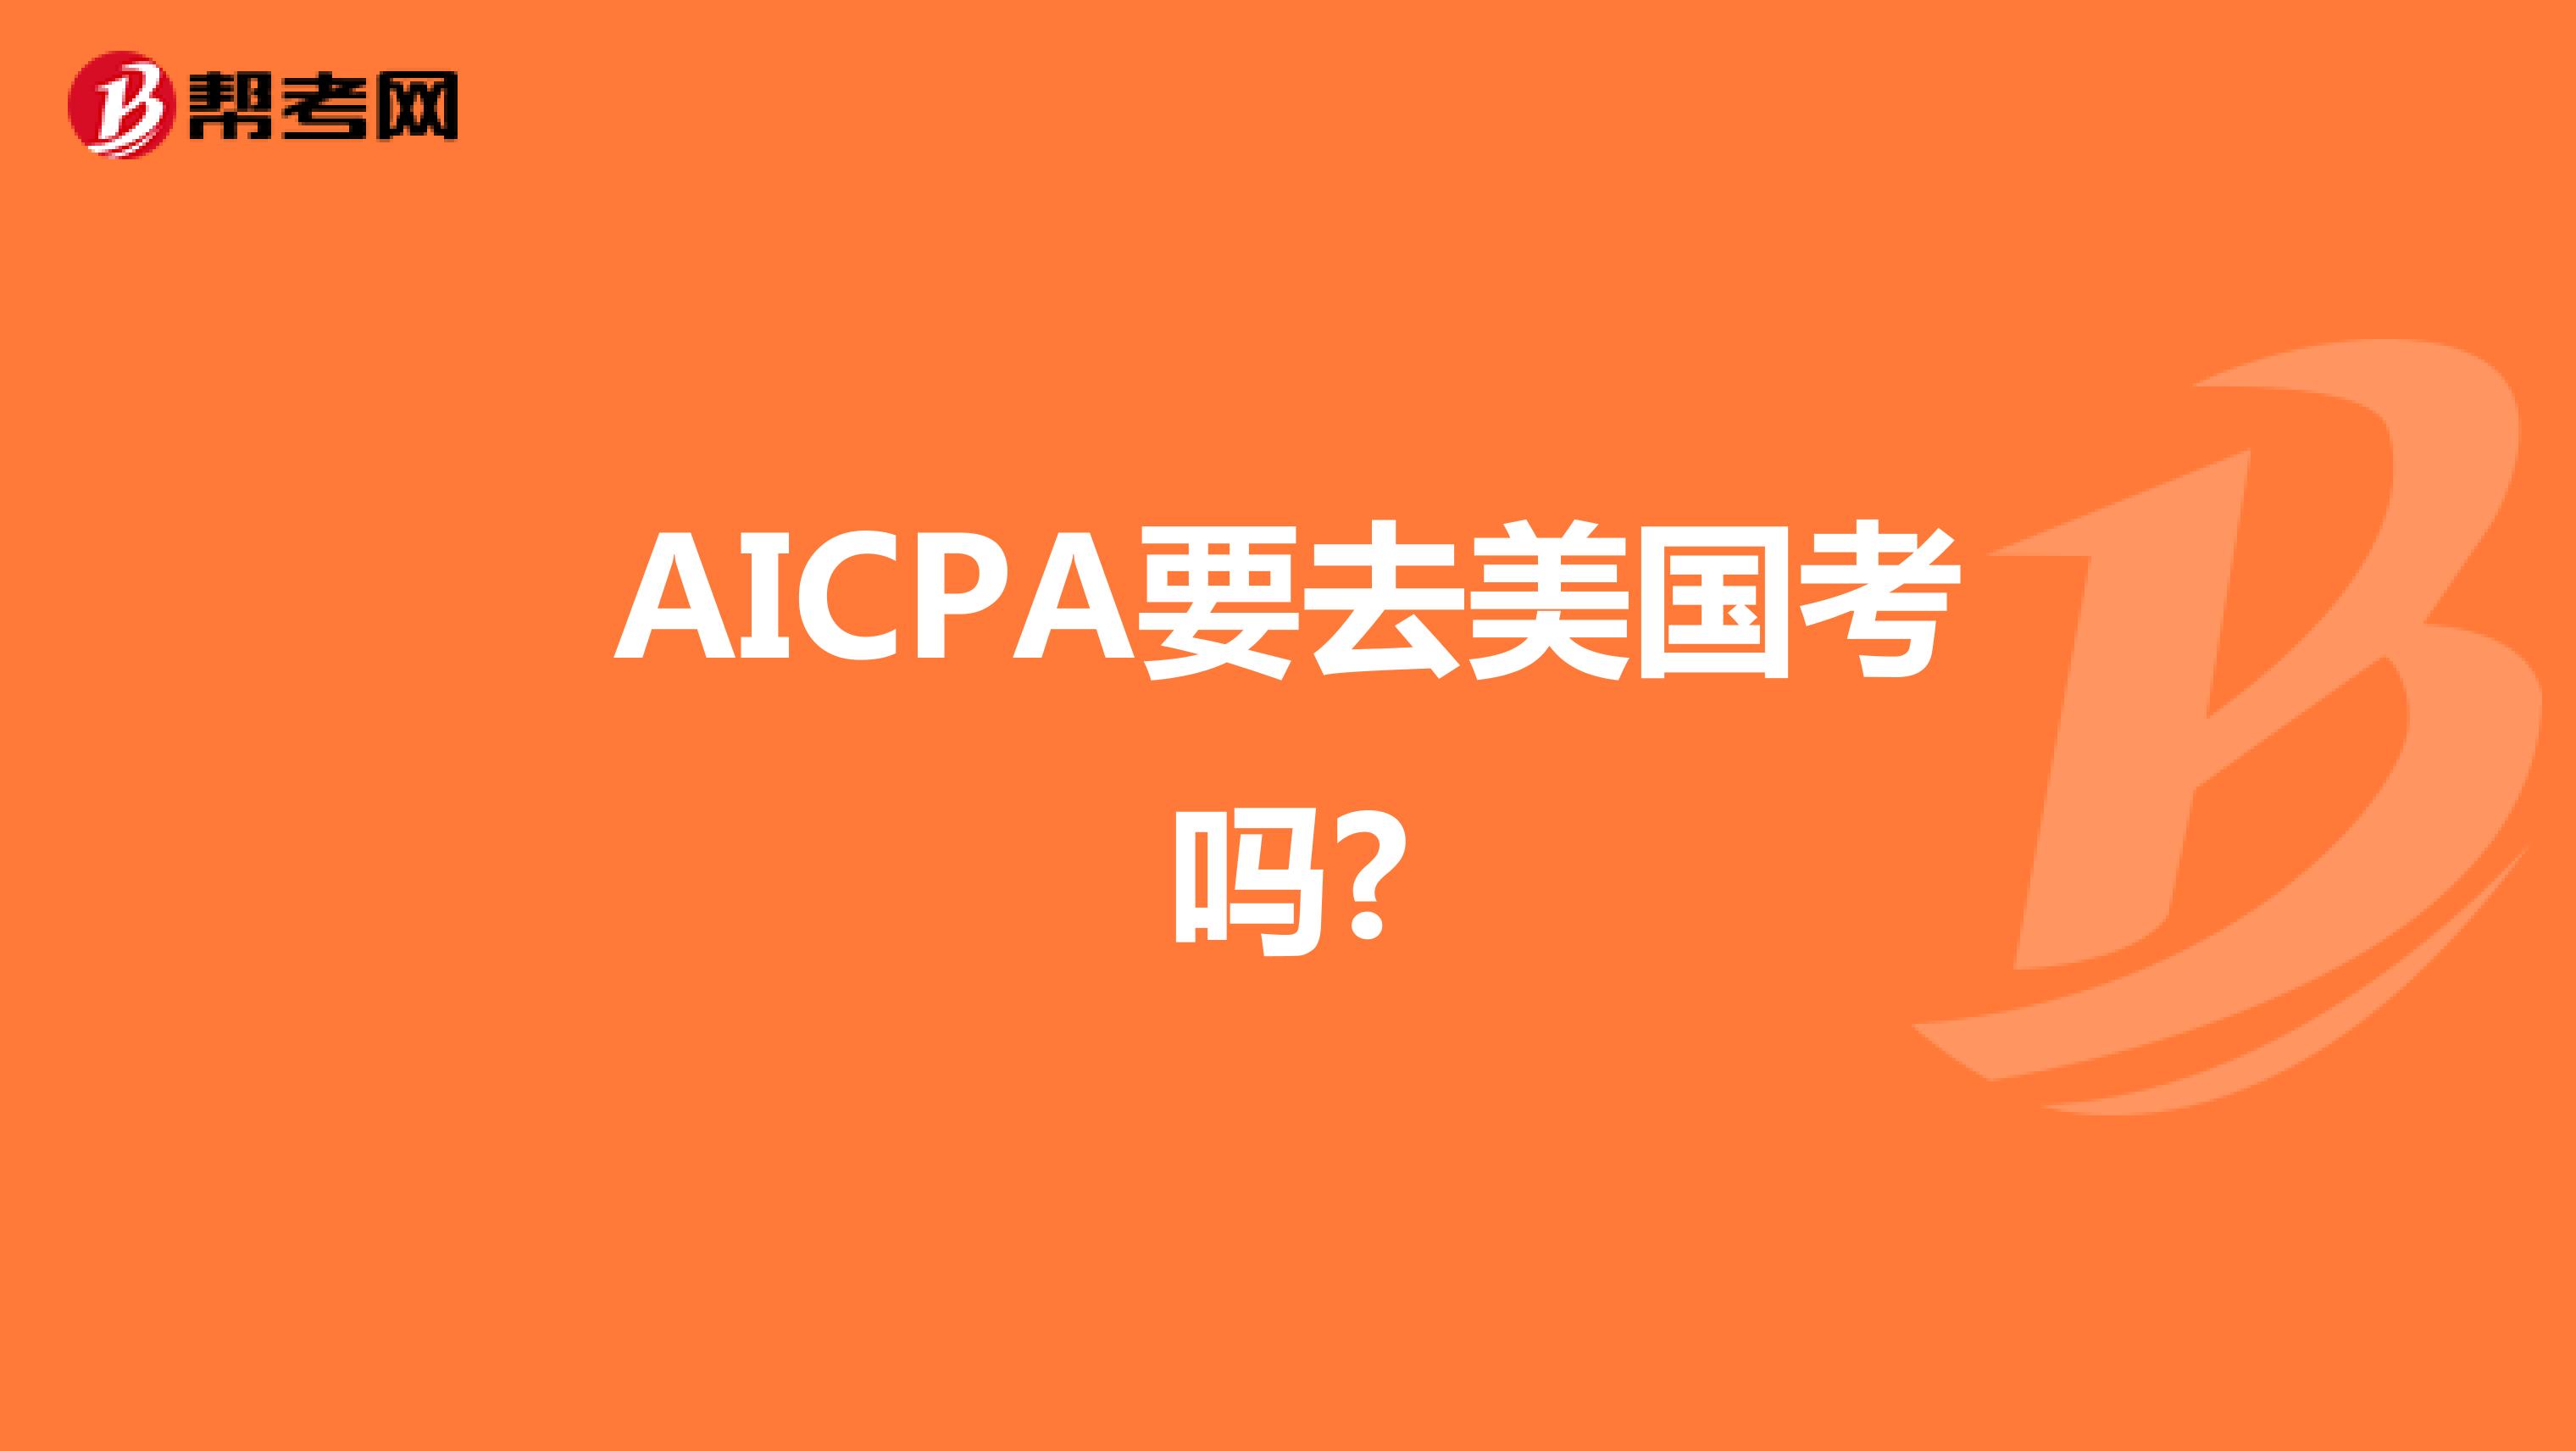 AICPA要去美国考吗?